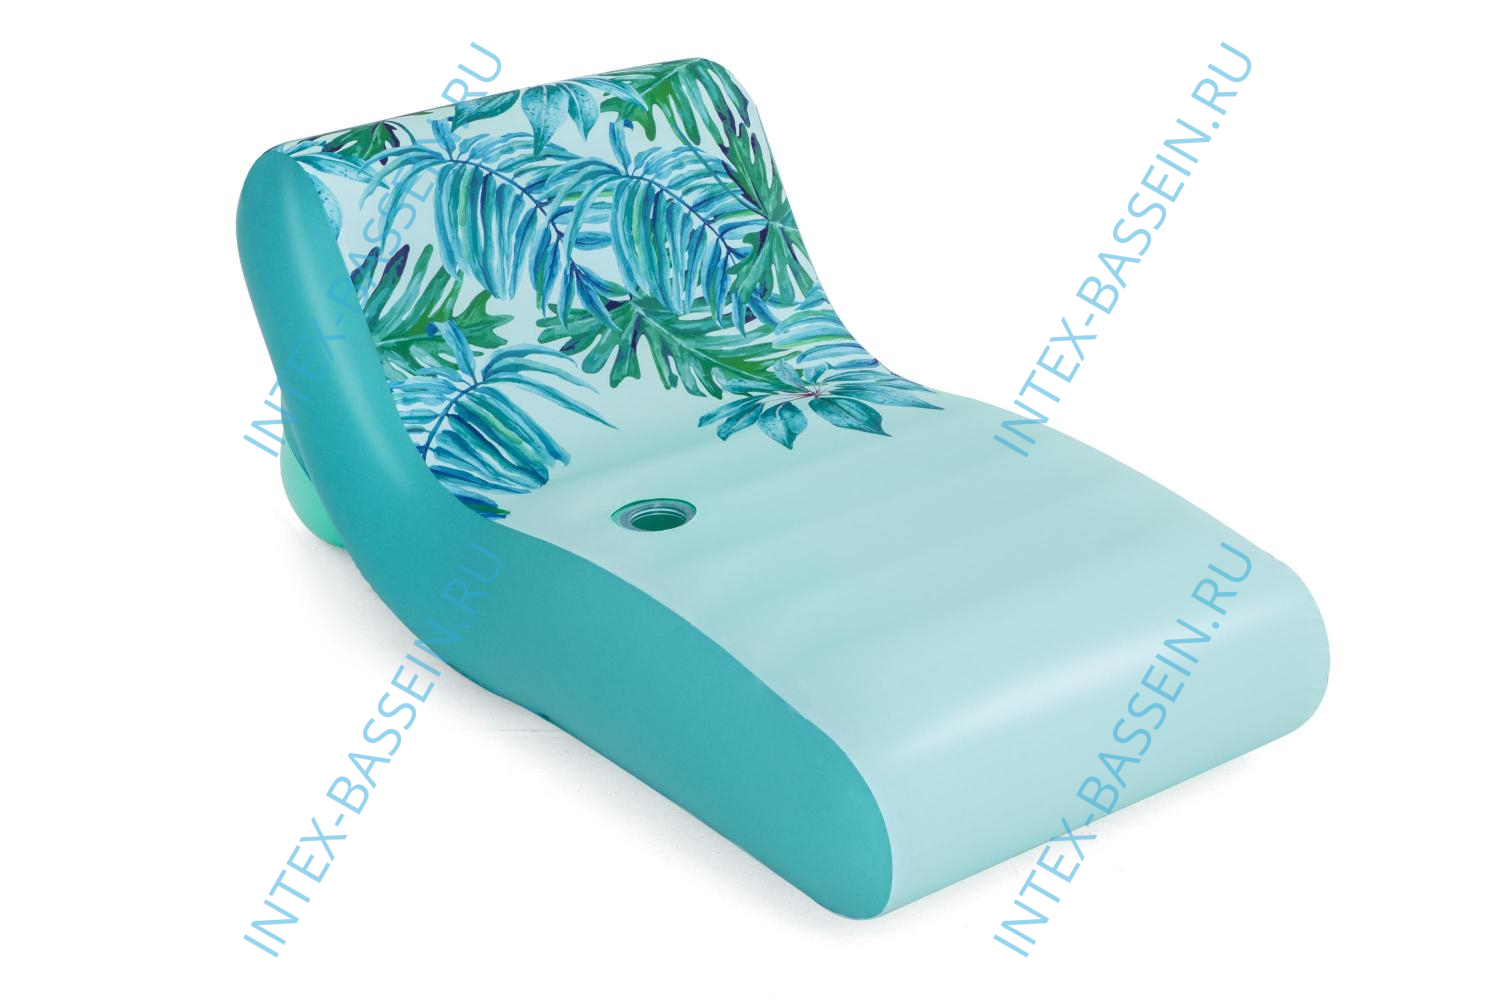 Надувной матрас-шезлонг для плавания Bestway Luxury, с тканевым покрытием, 1.76 x 1.07 м, артикул 43402